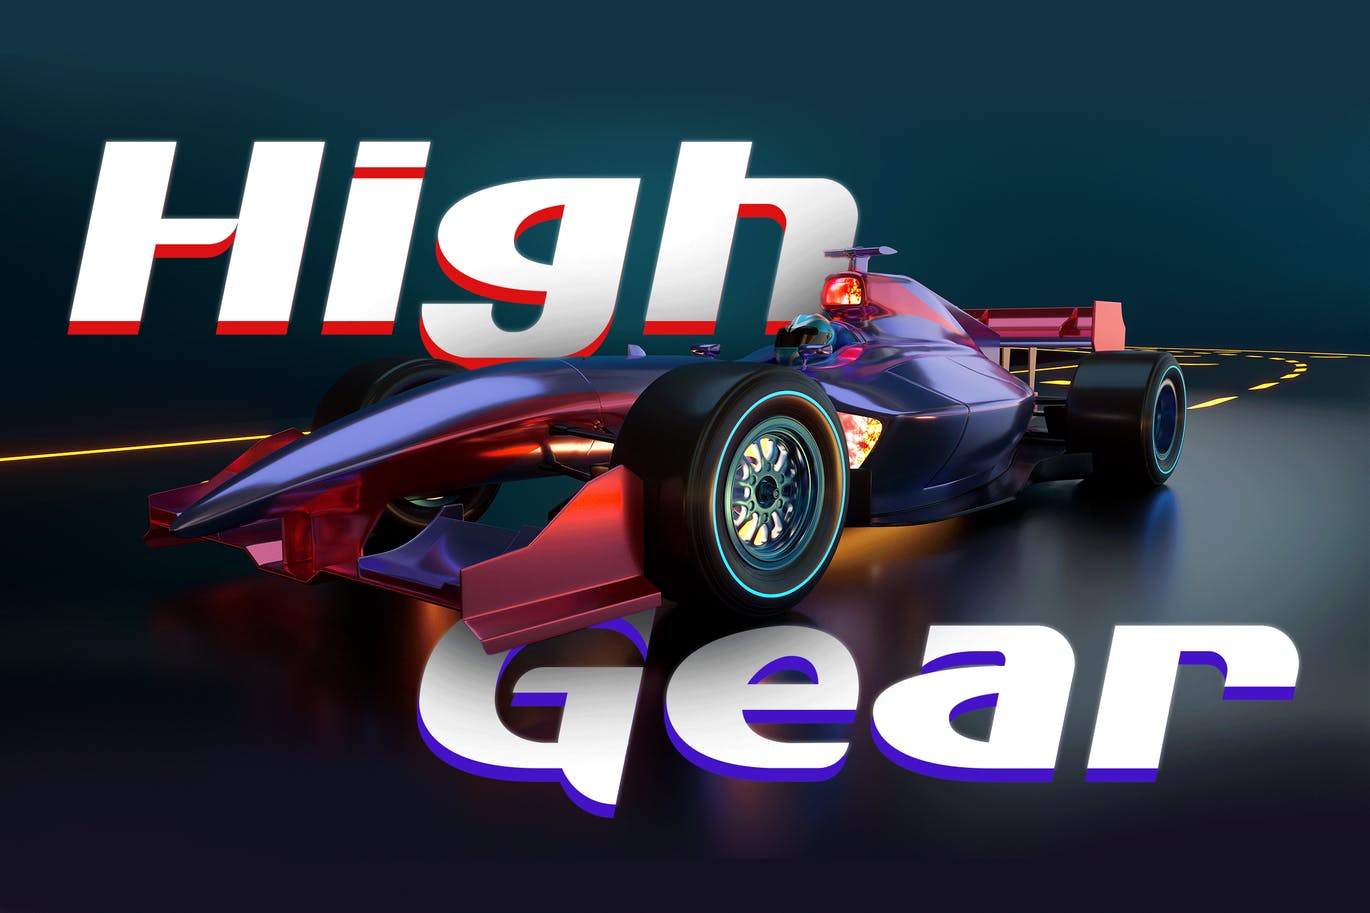 赛车游戏无衬线字体素材 High Gear – Gaming Font 设计素材 第1张